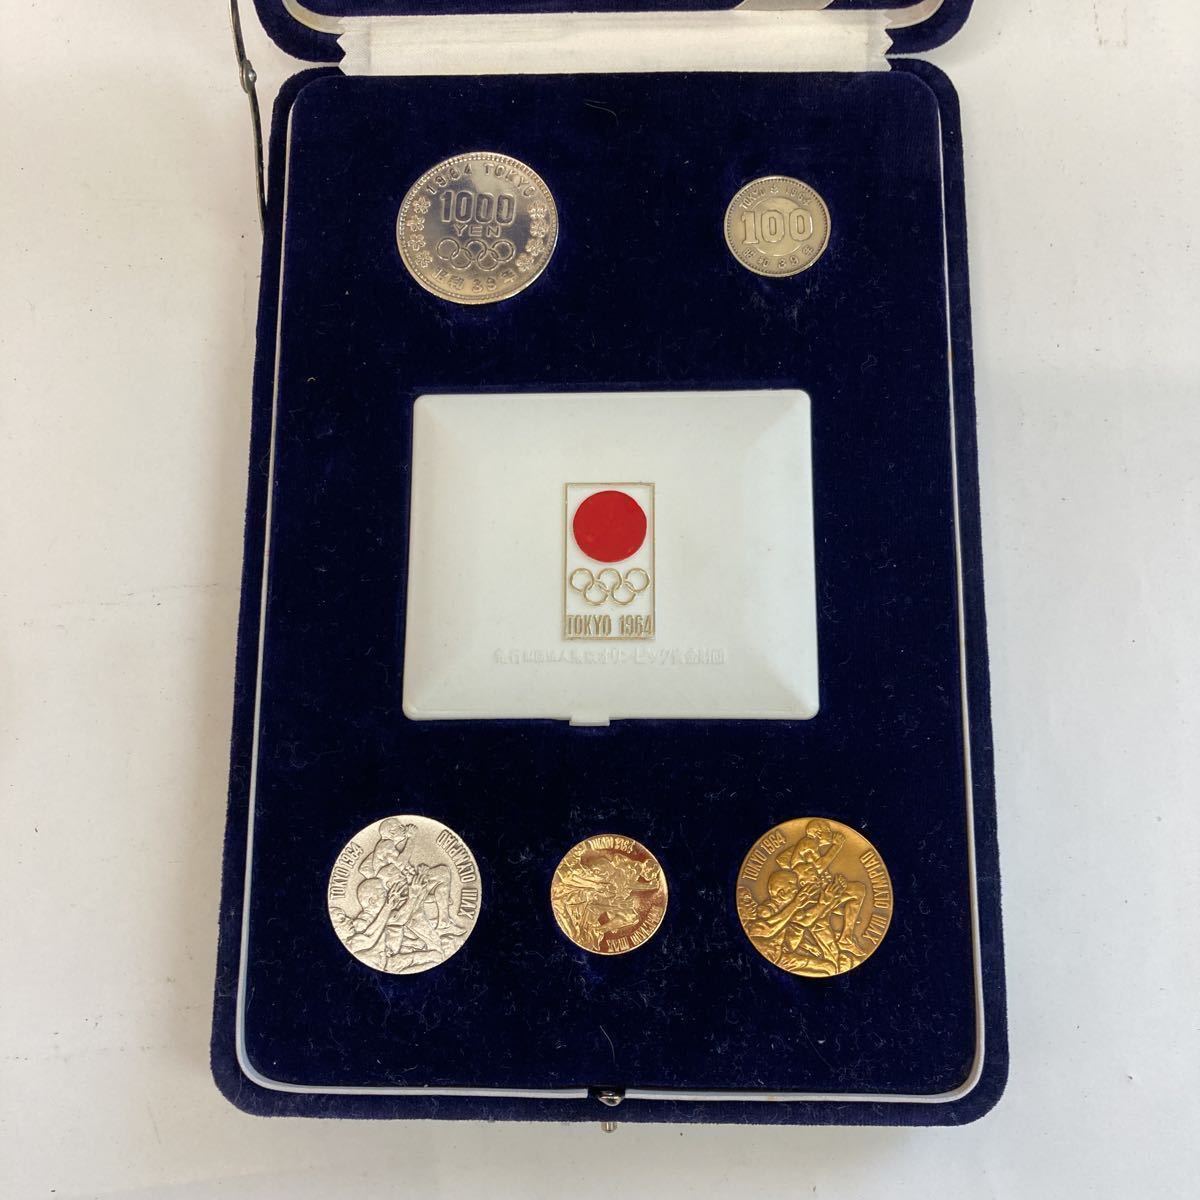 1964年東京オリンピック記念メダル金銀銅、1000円100円硬貨